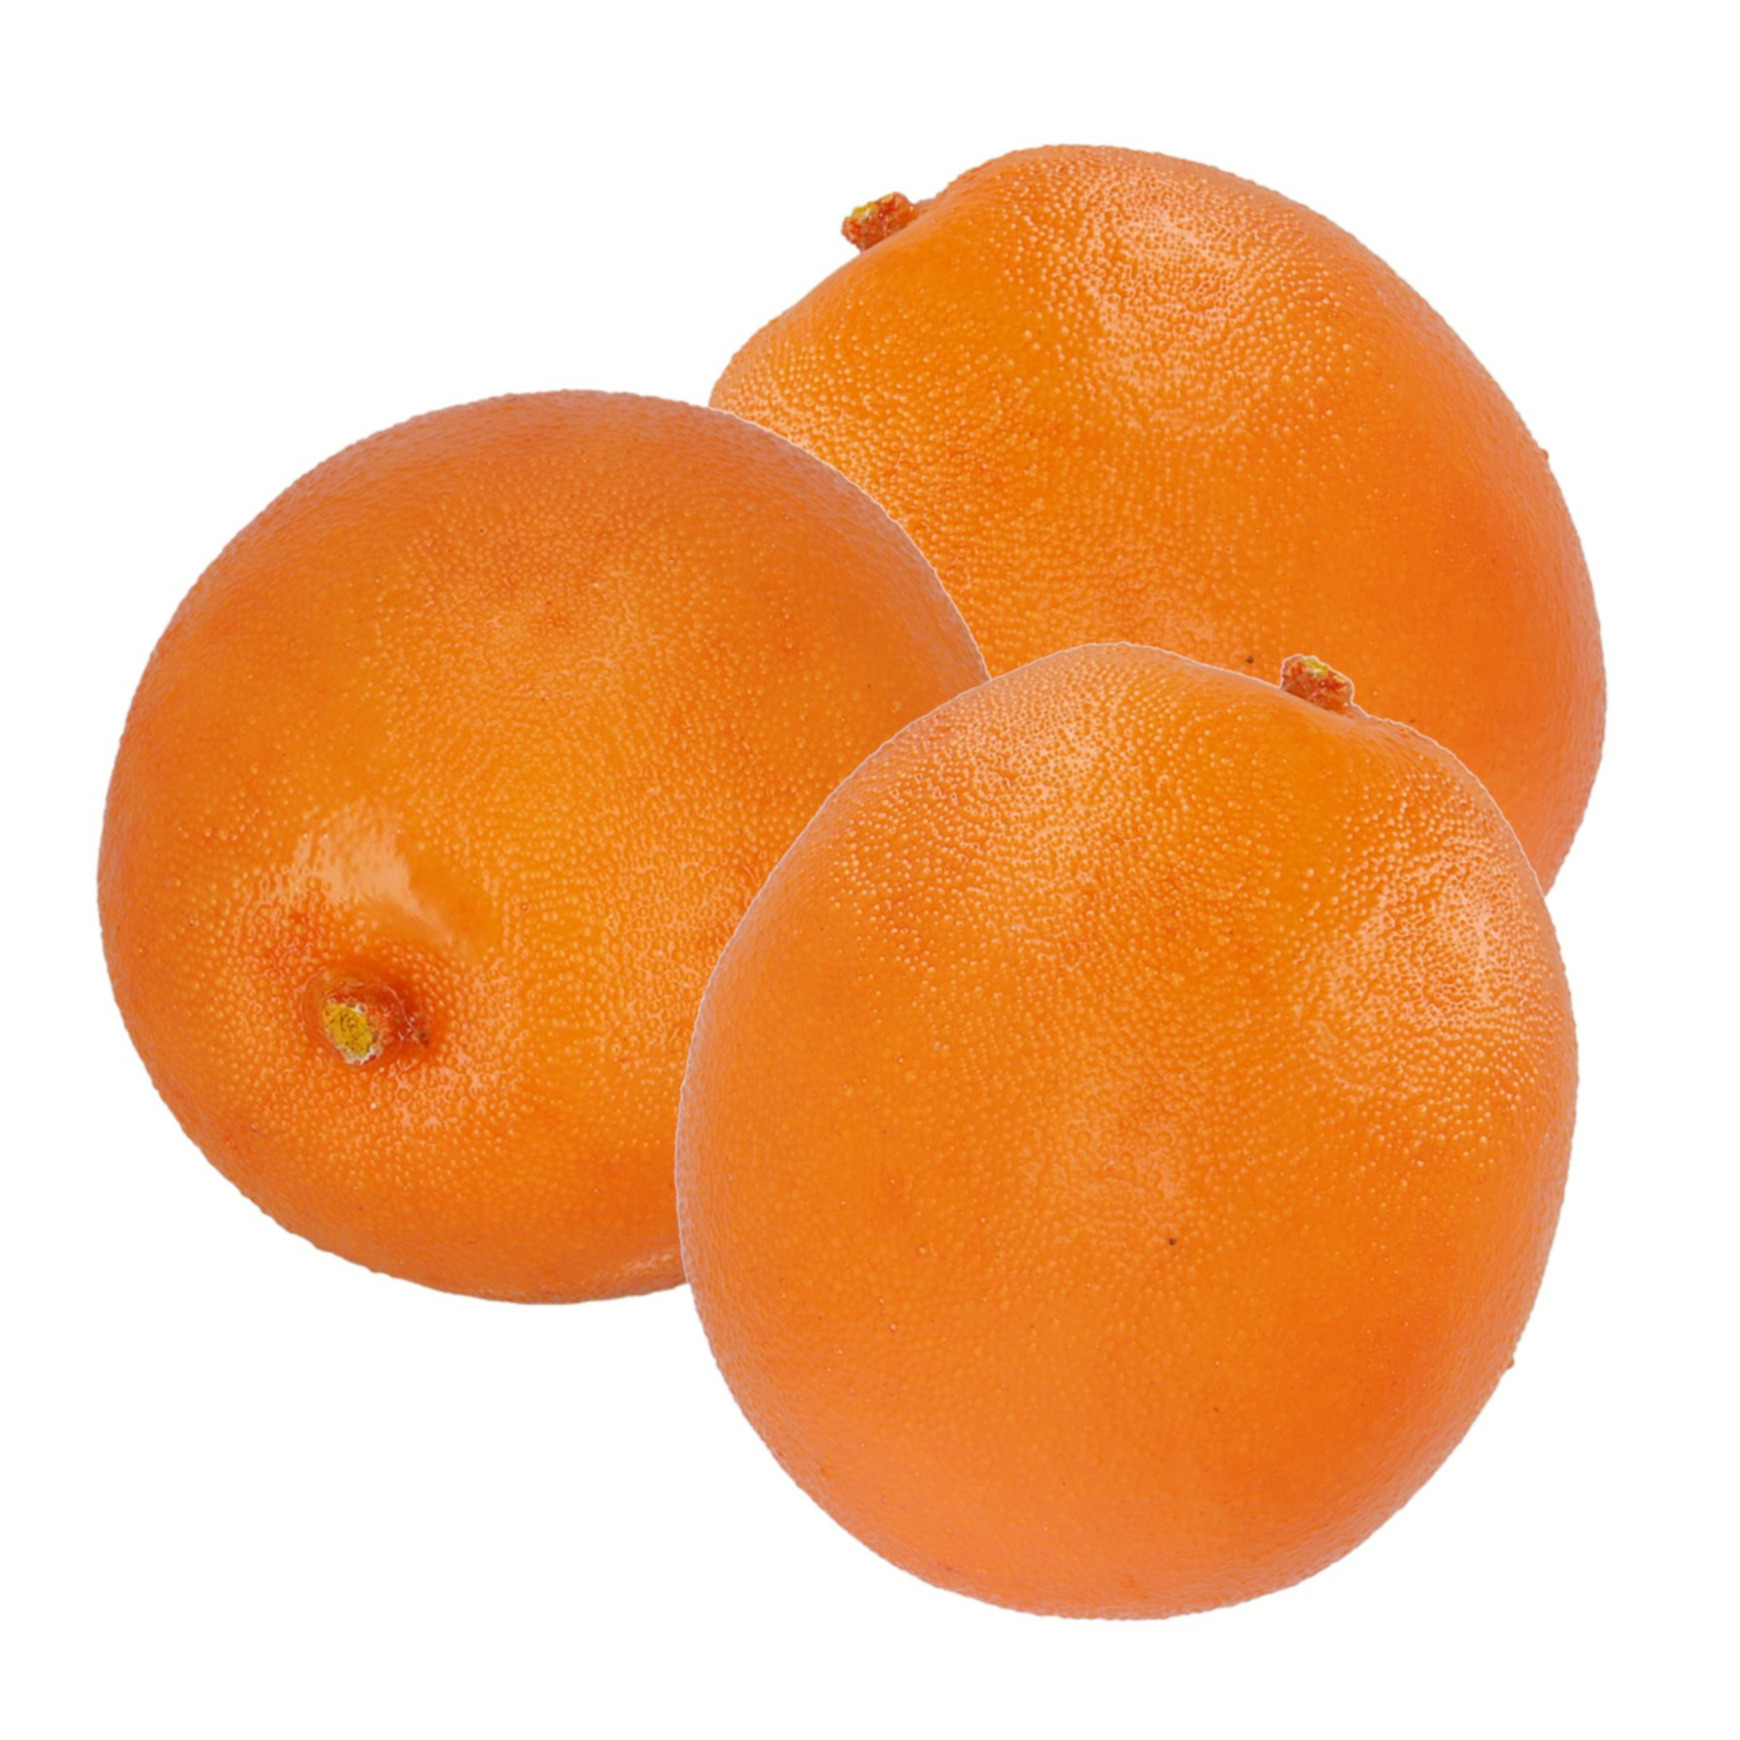 Esschert Design kunstfruit decofruit - 3x - sinaasappel/sinaasappels - ongeveer 7.5 cm - oranje -